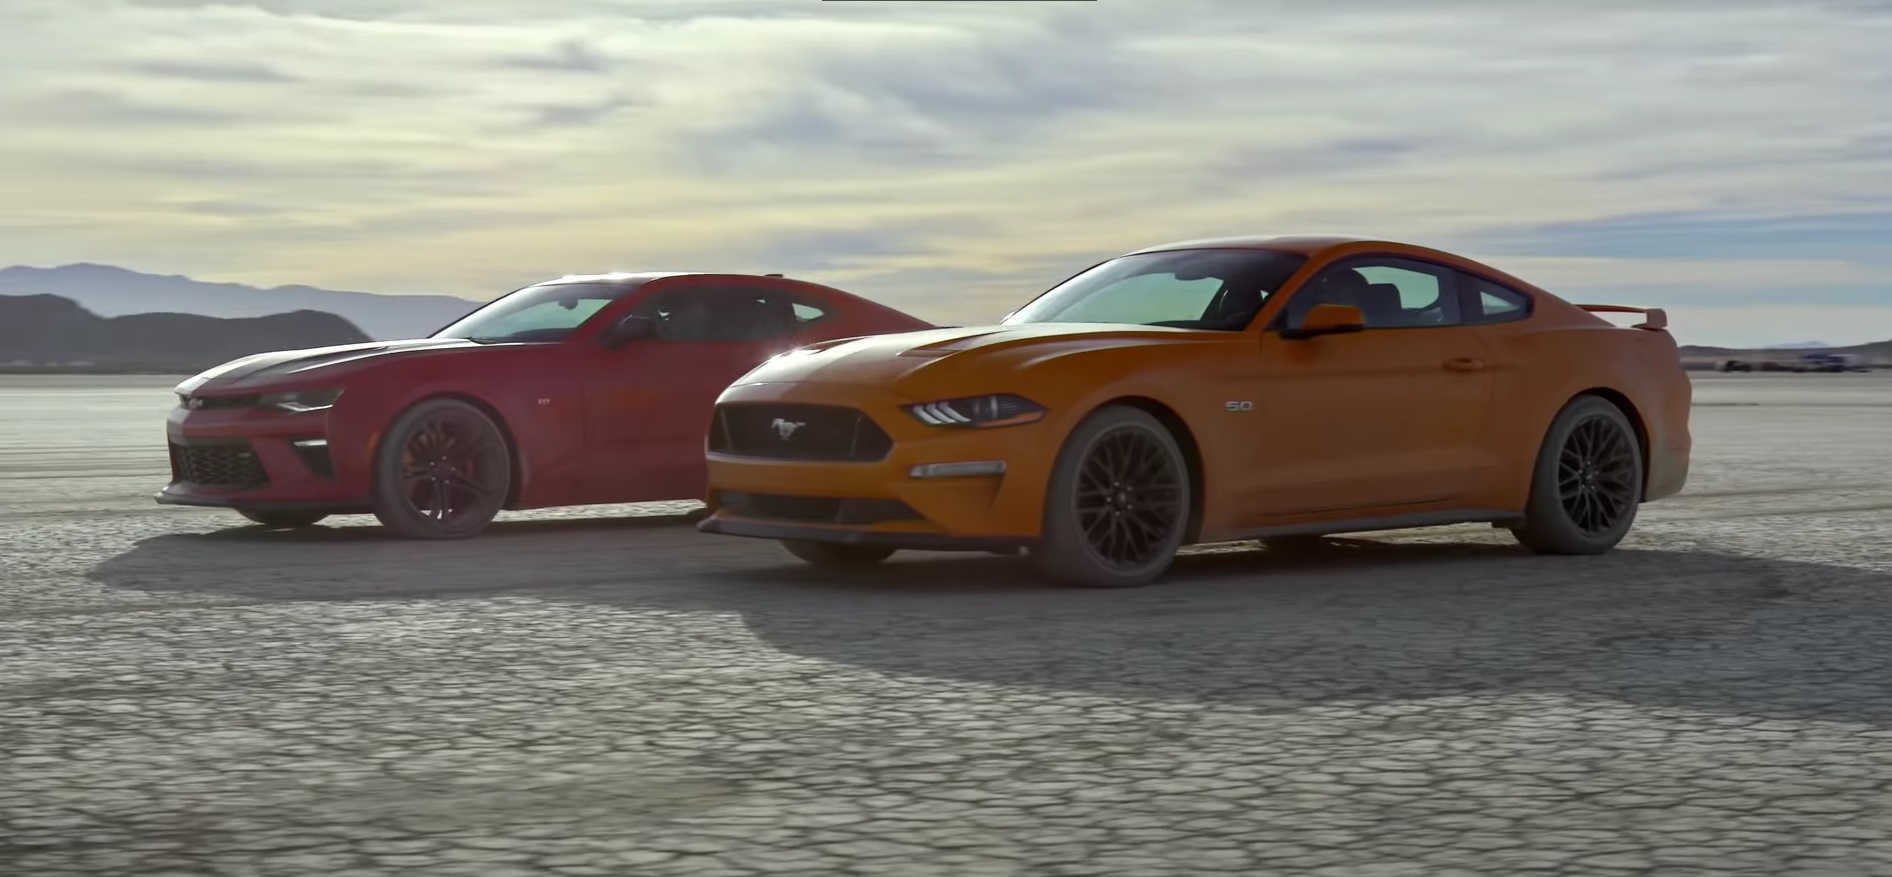 Video: 2018 Ford Mustang GT vs Camaro SS 1LE - Desert Drag Race